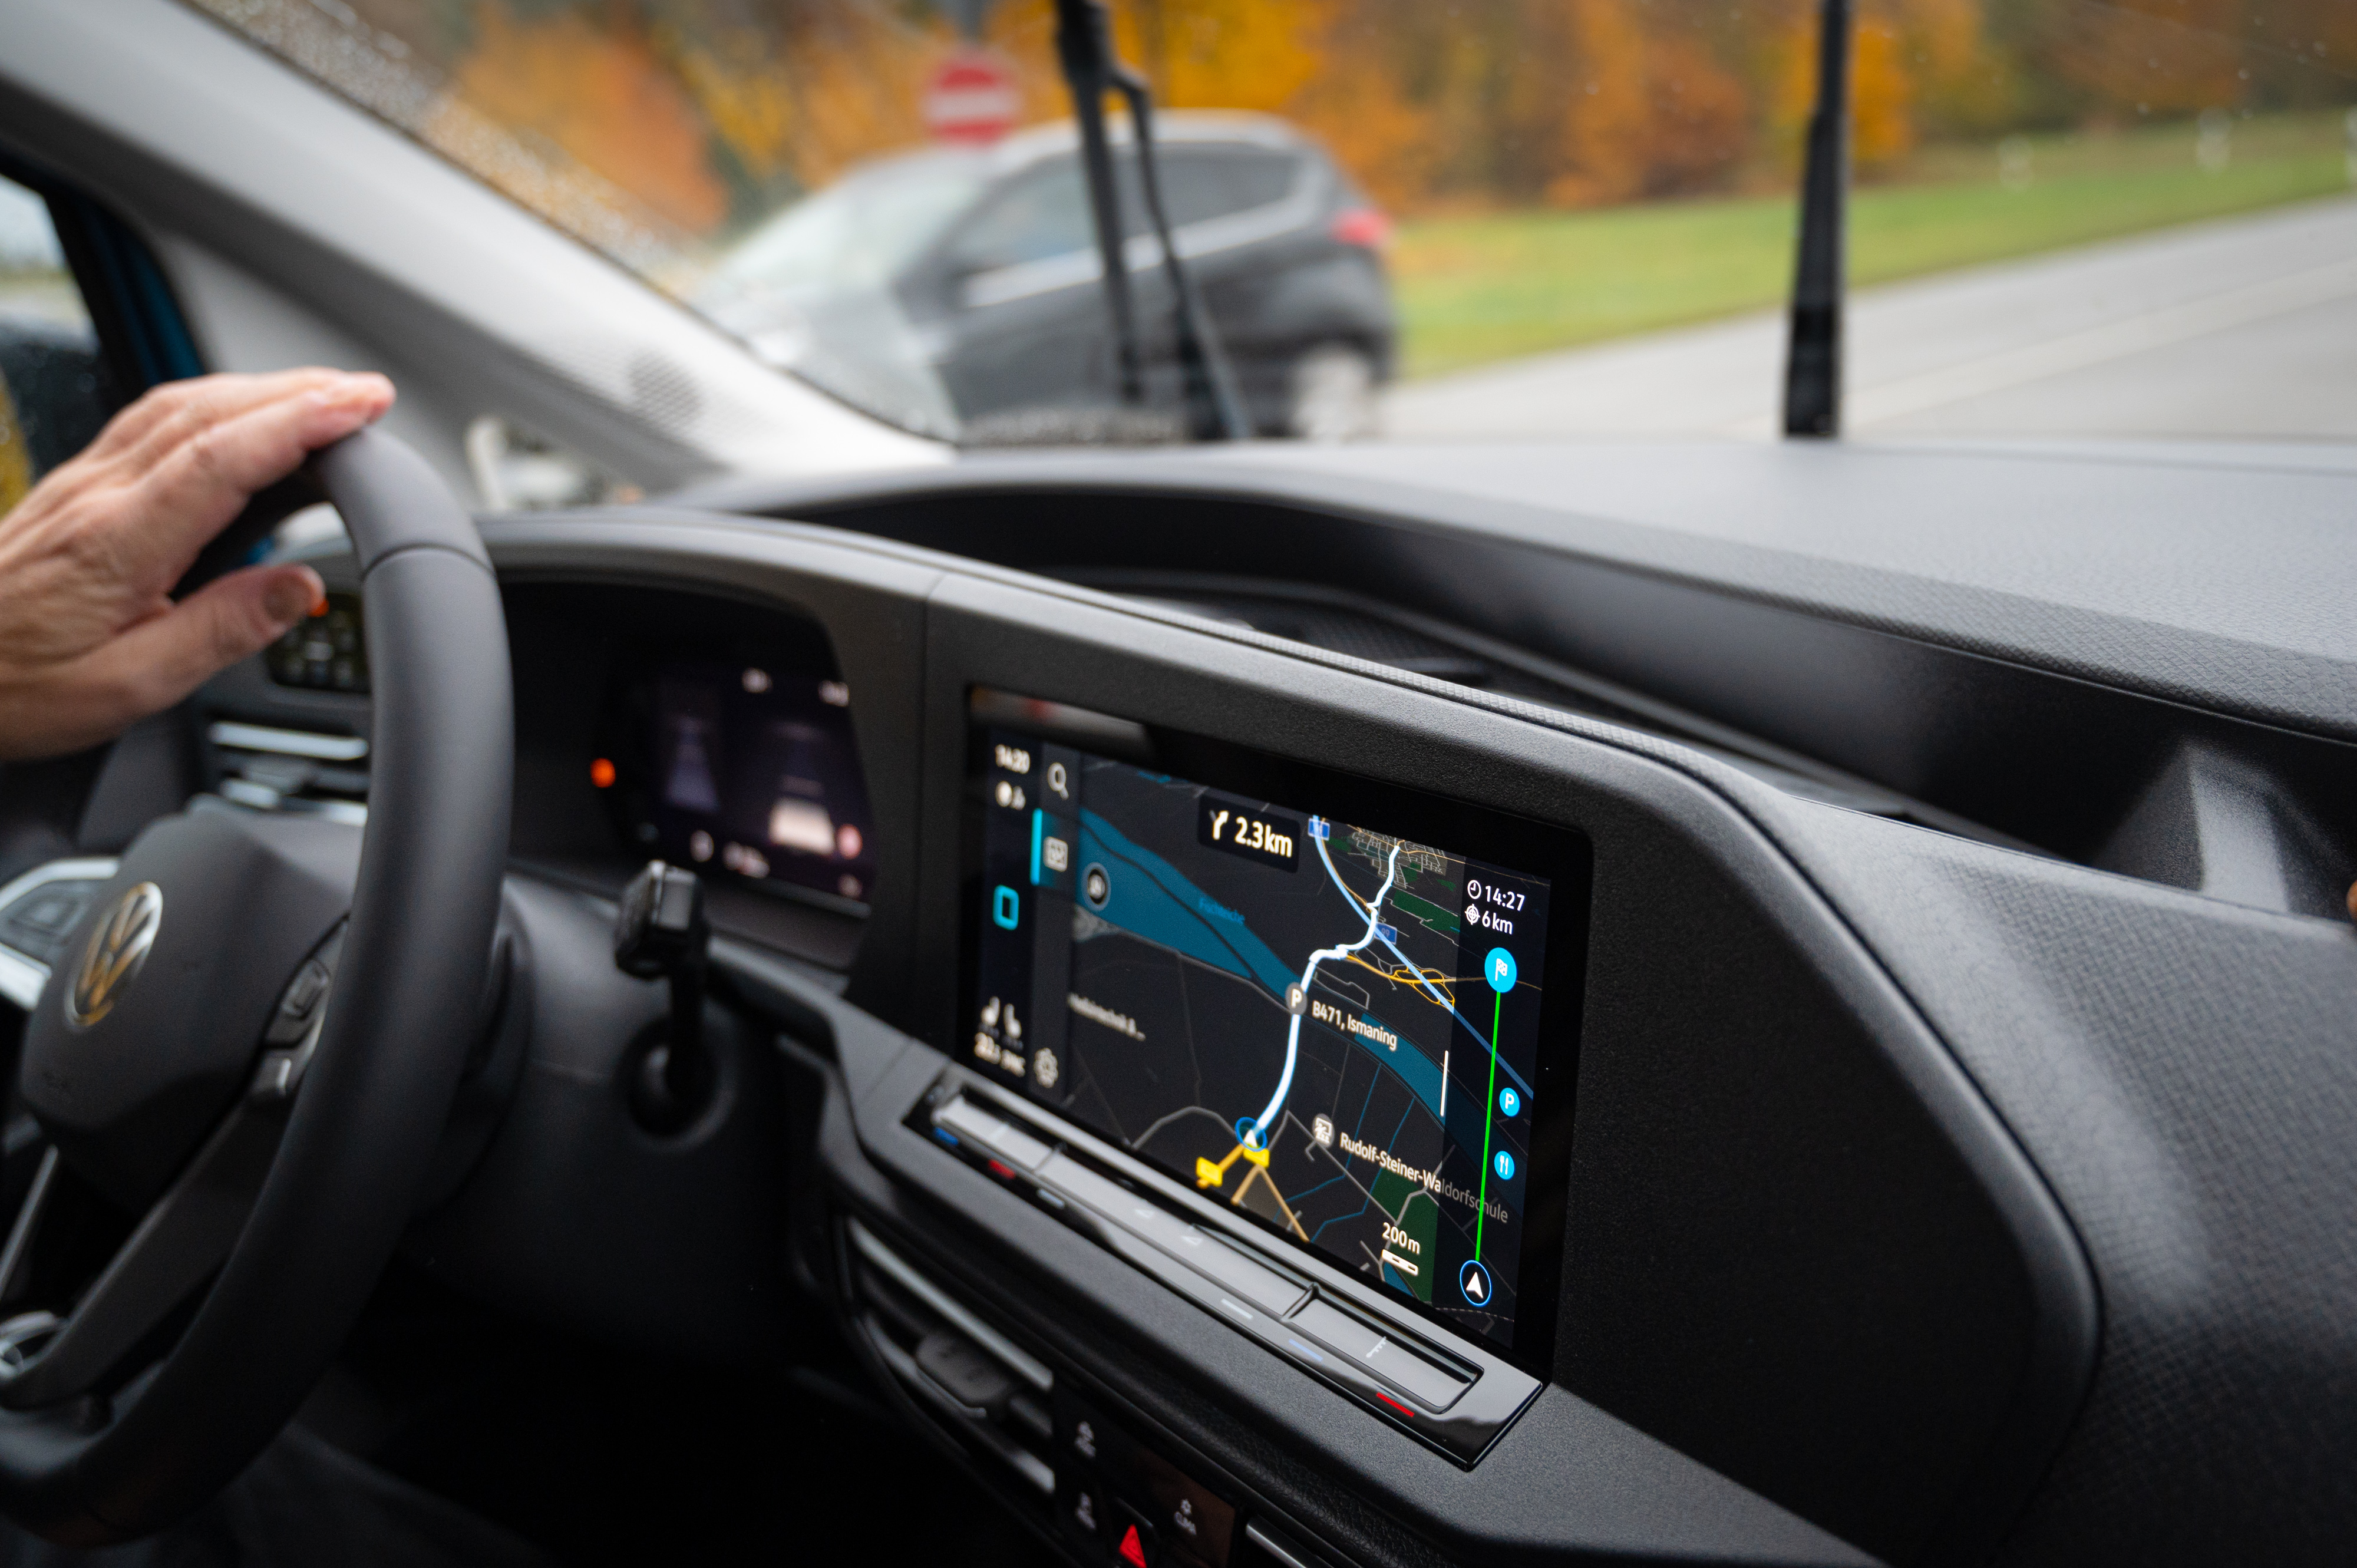 Display mit Touchscreen für Navigation und Fahrzeugsysteme. Foto: © Martin Bärtges